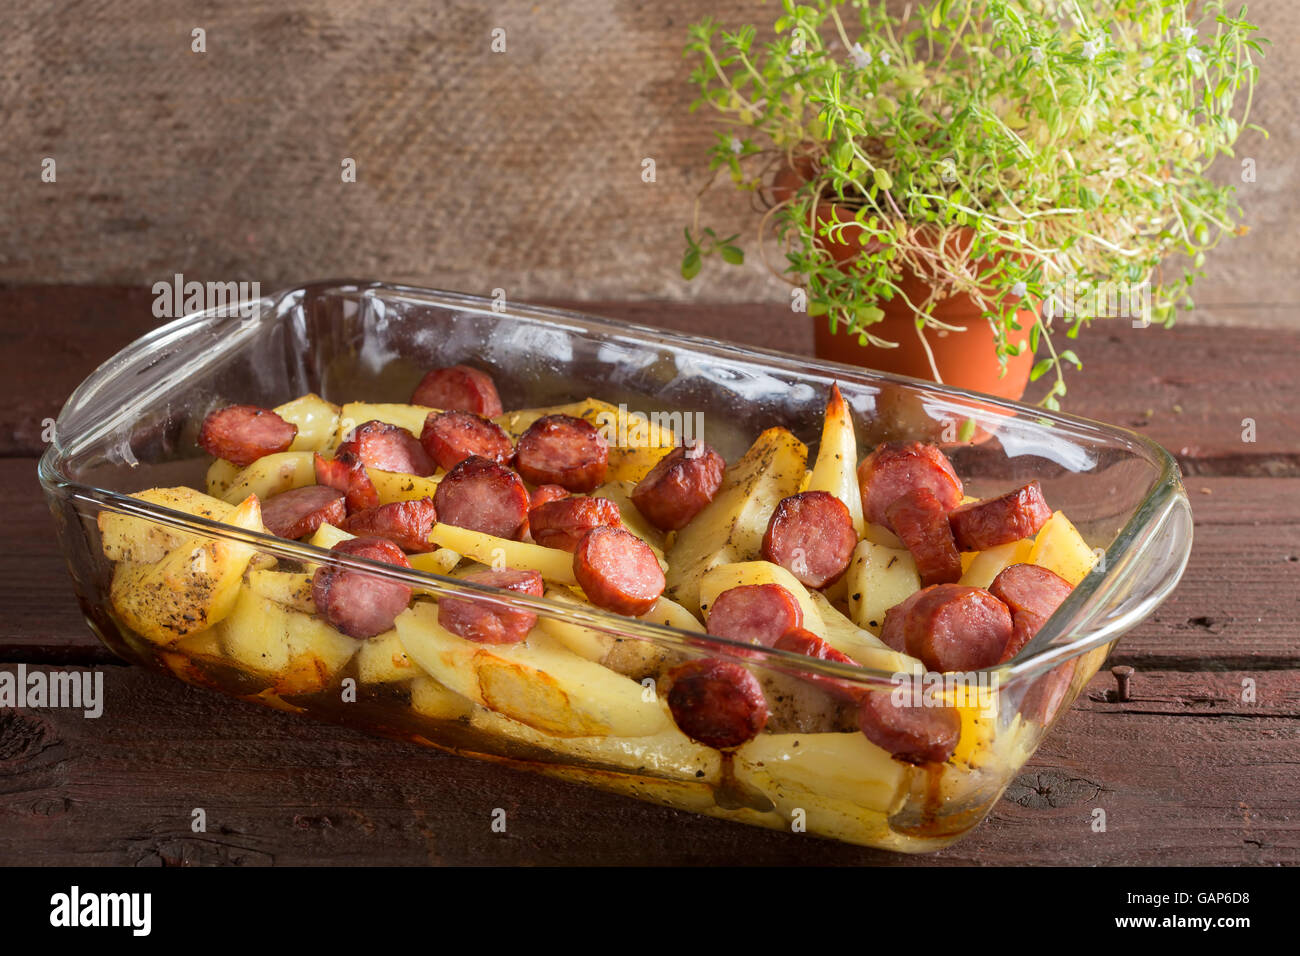 Tablett mit Bratkartoffeln mit Würstchen und Gewürzen auf hölzernen Hintergrund Stockfoto